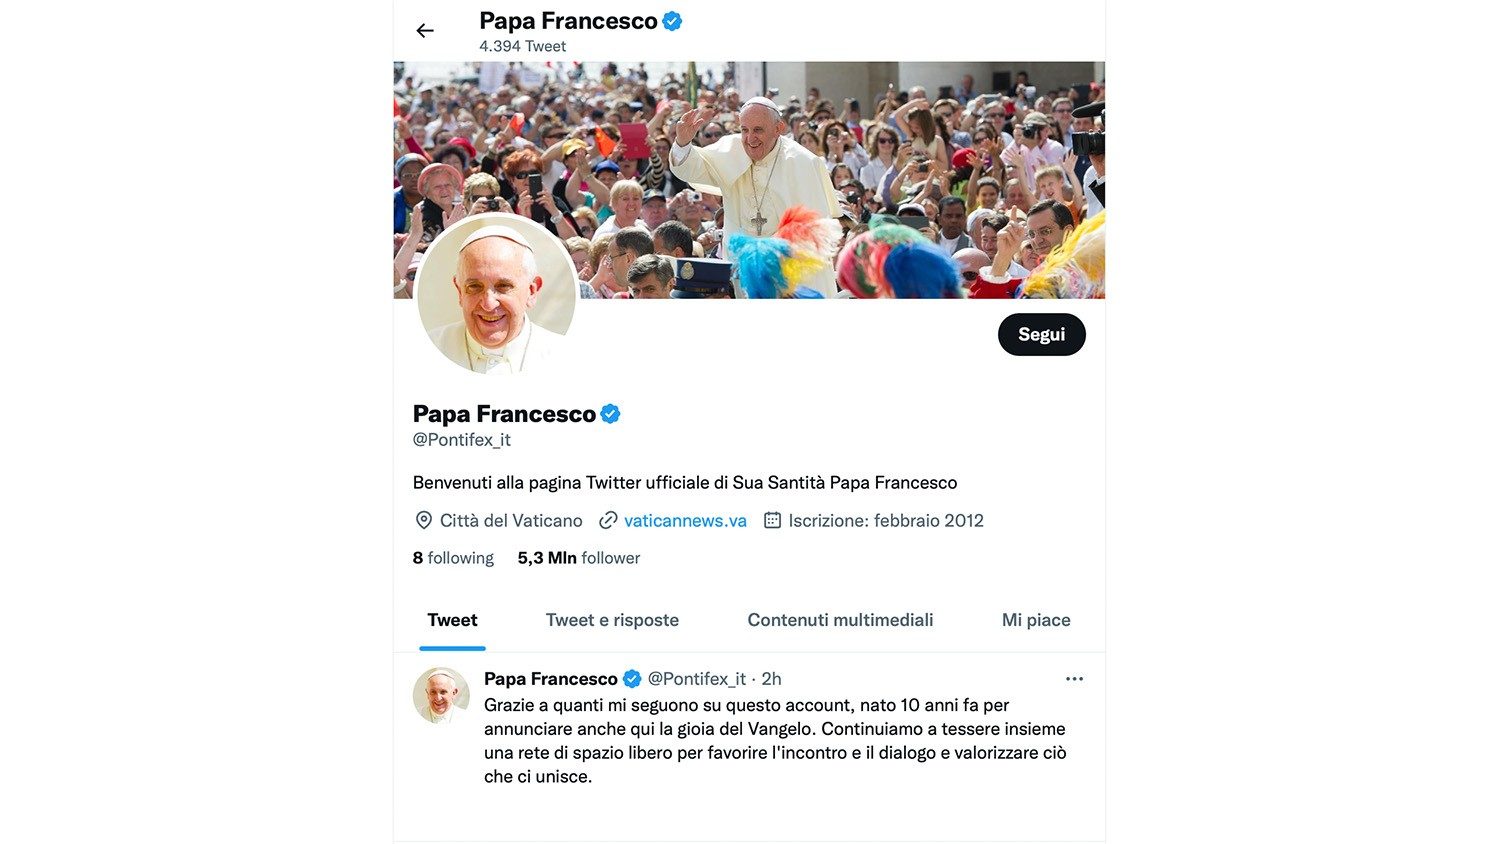 Dieci anni fa il primo tweet di @Pontifex, oggi ha 53 milioni di follower 